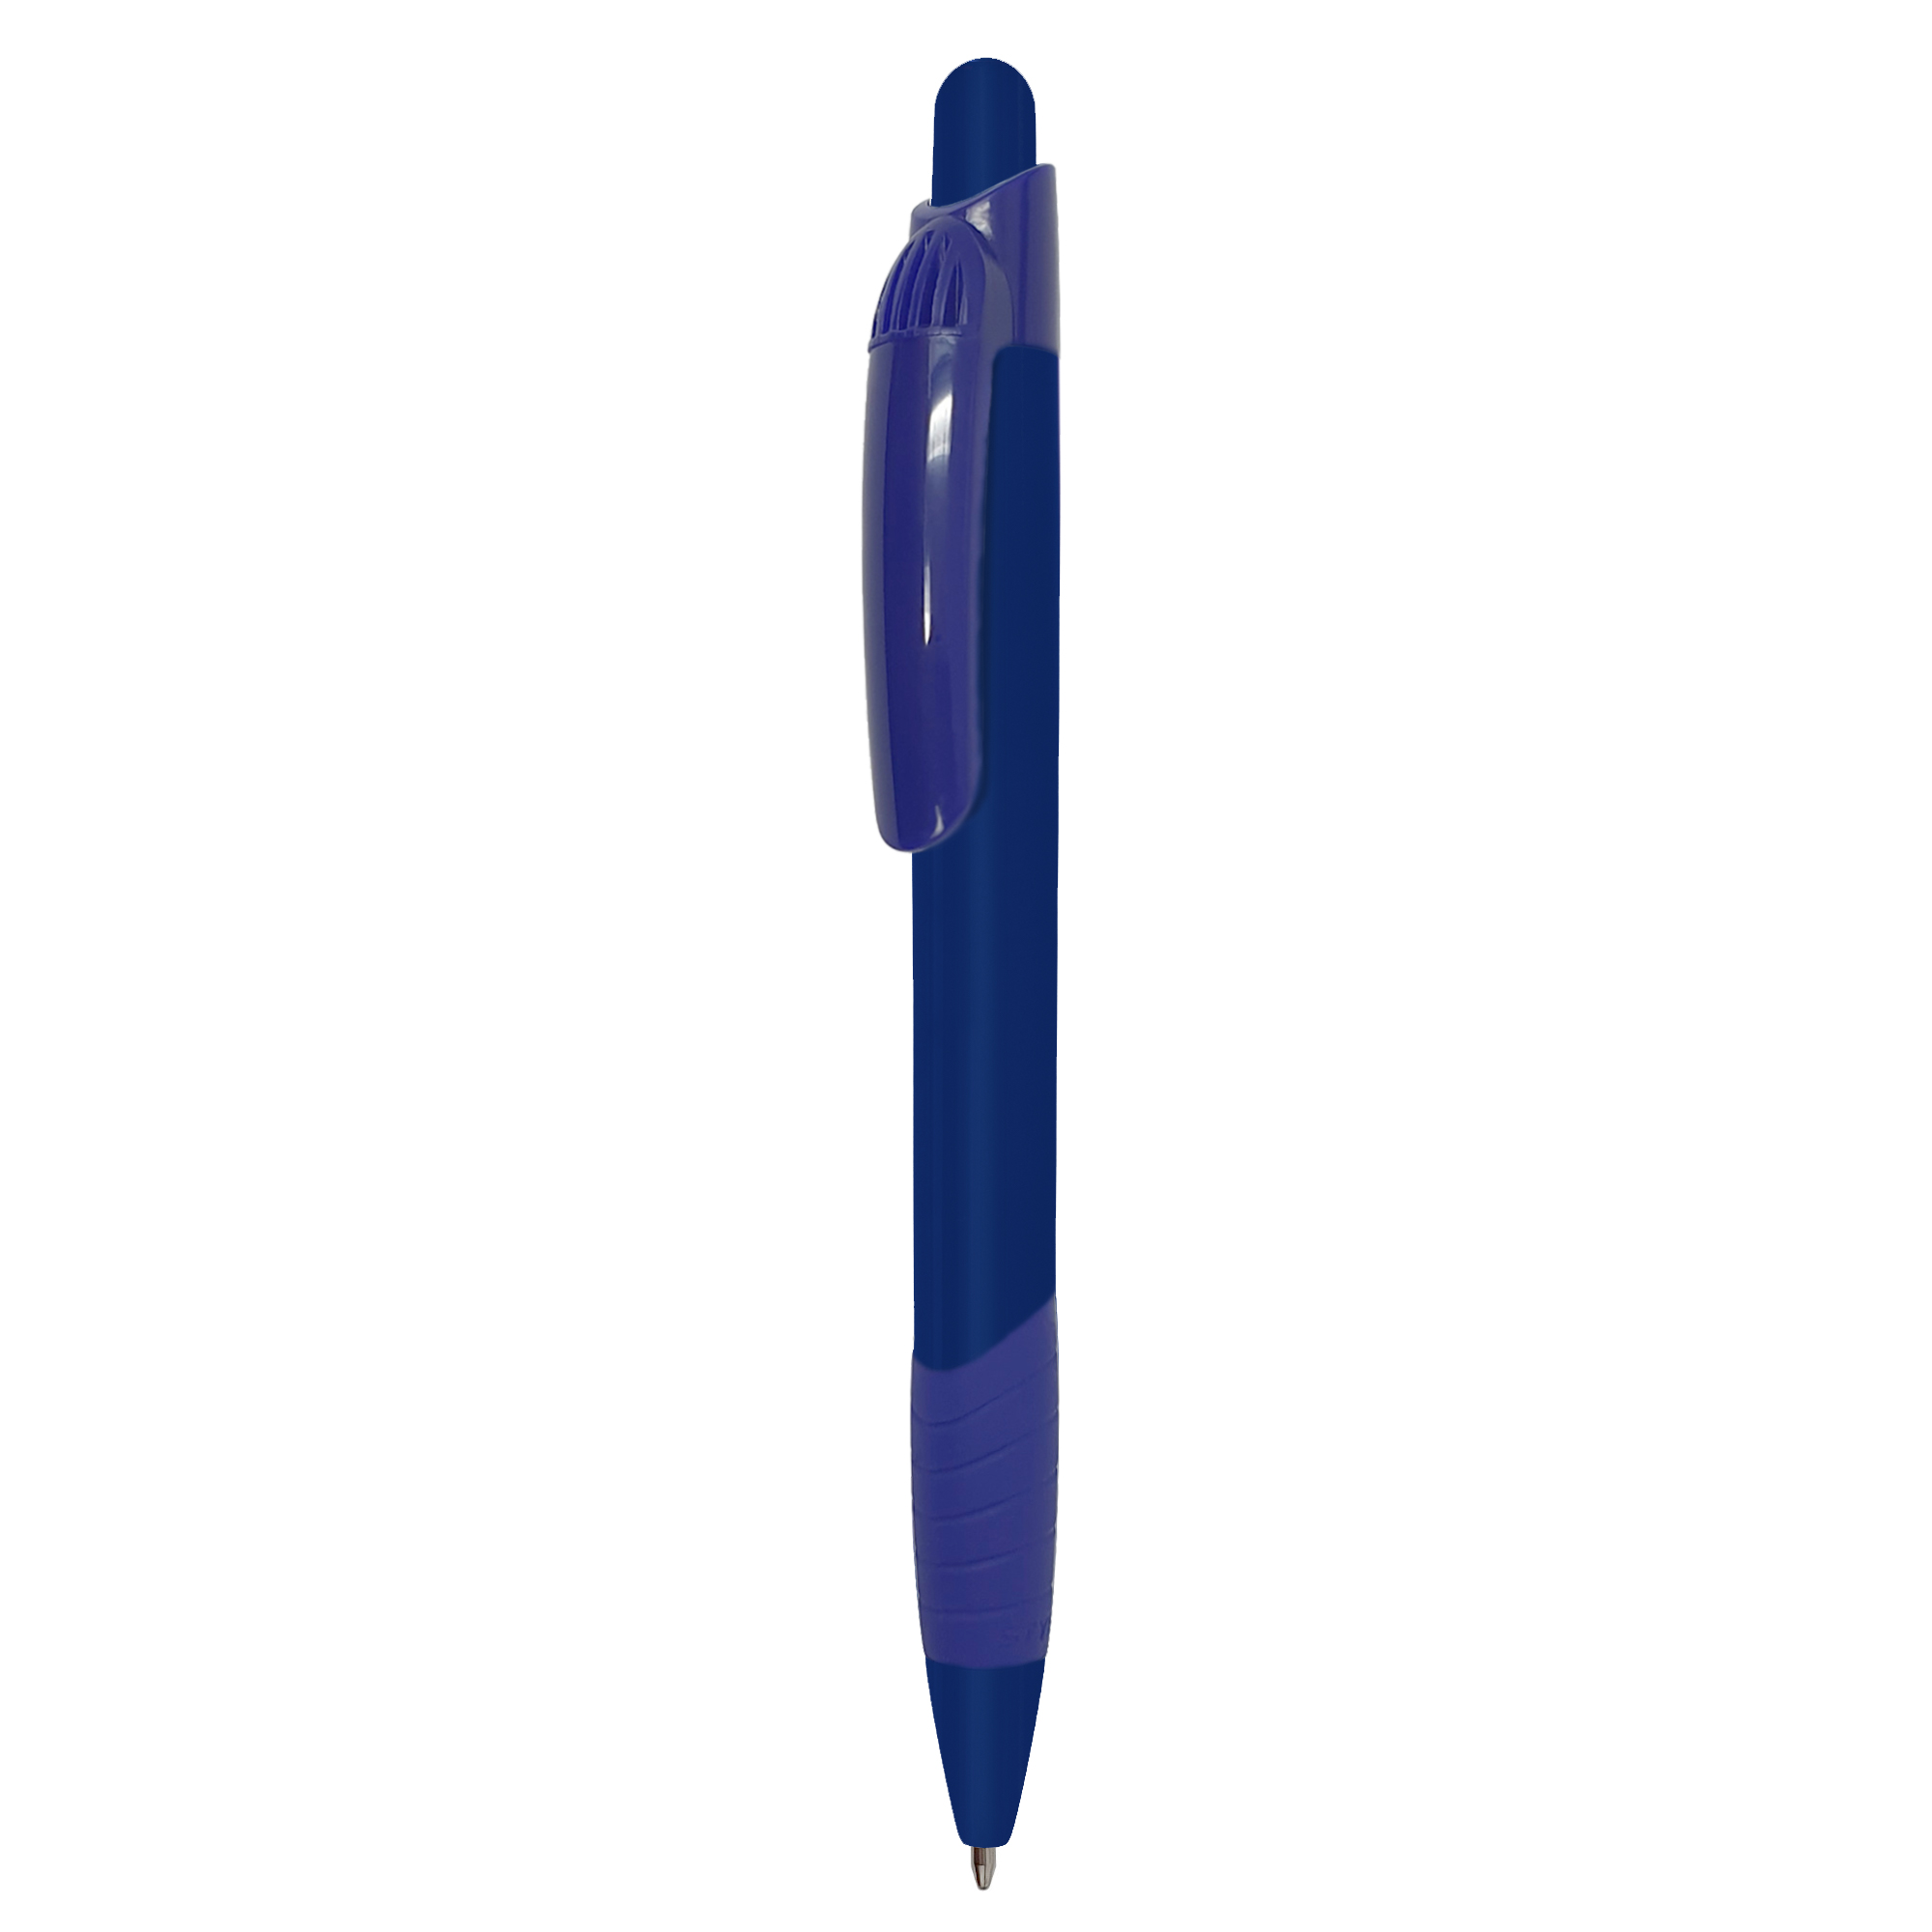 Bolígrafo Sydney
Color azul completo